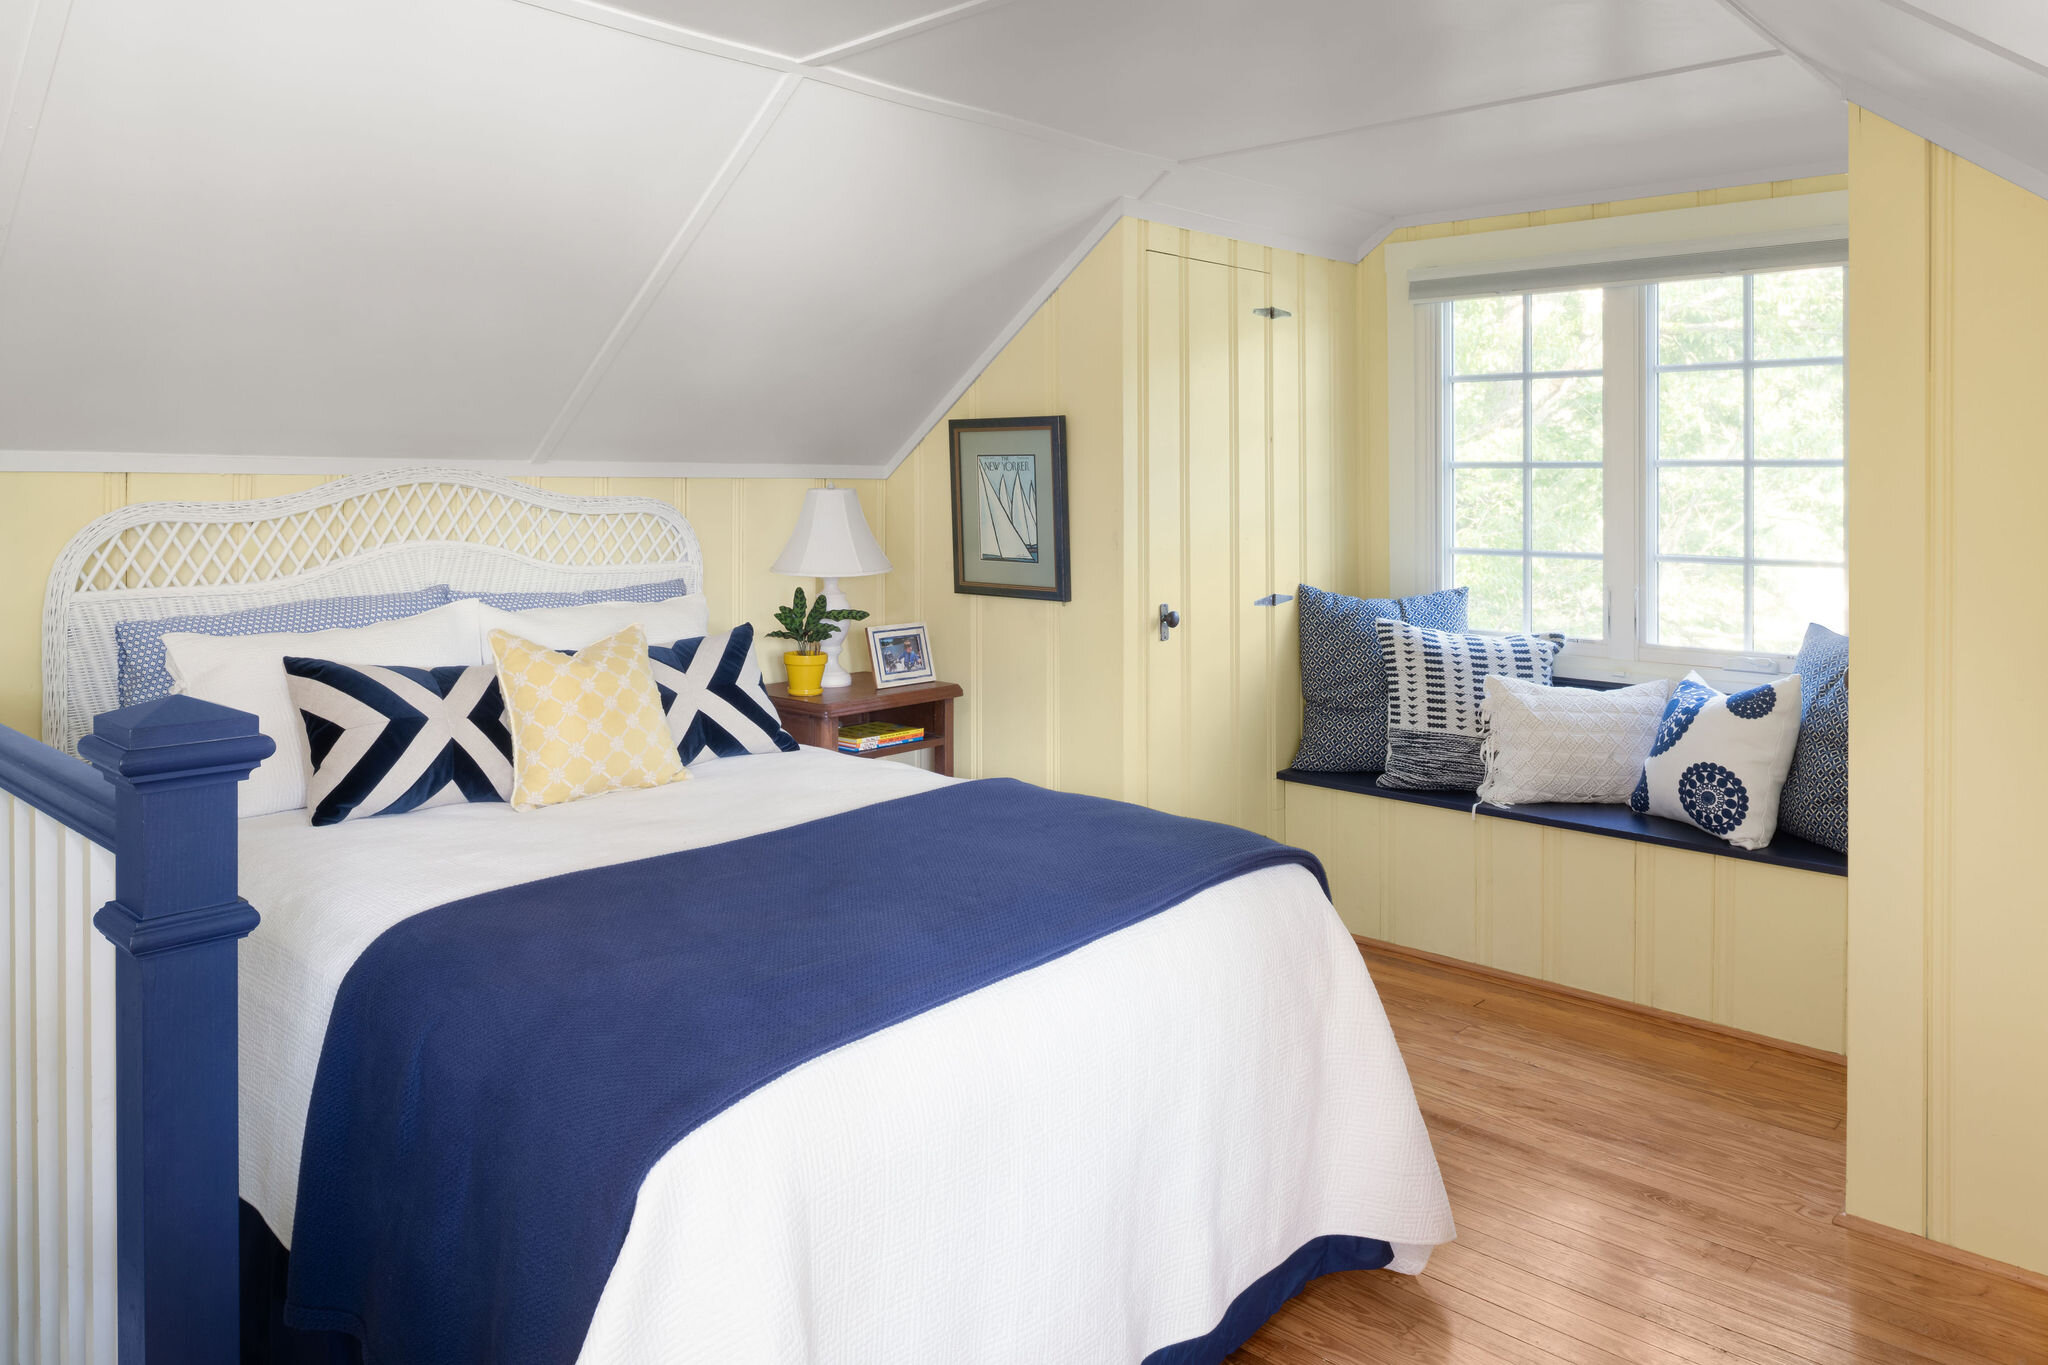 loft bedroom-interiordesign-MD-DC-VA-bayhouse.jpg